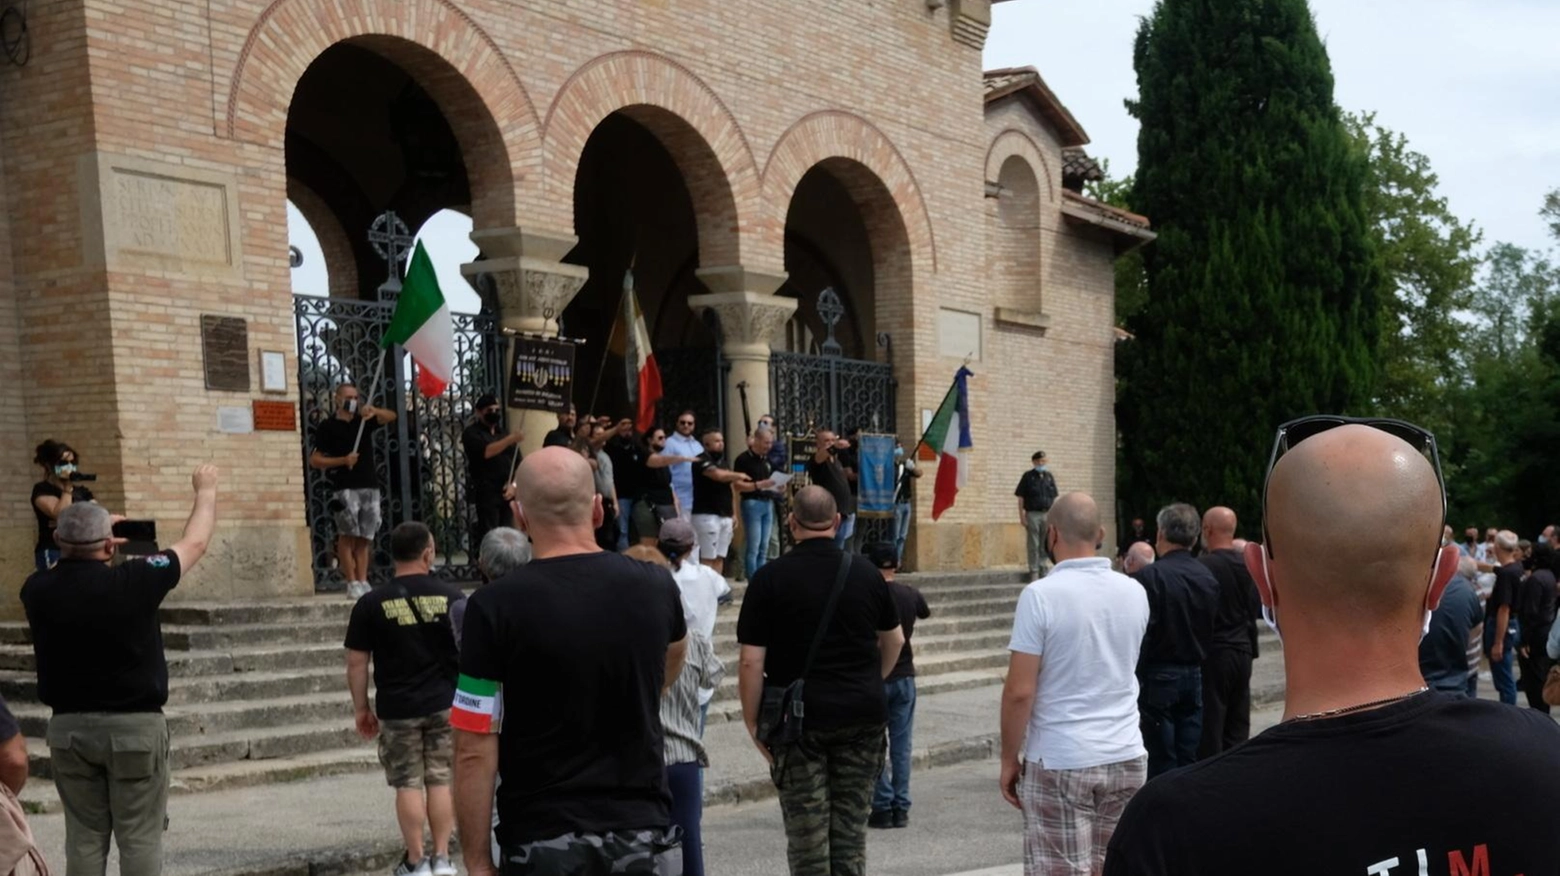 In tribunale a Forlì udienza per un raduno di nostalgici del luglio 2020. La strategia della difesa: "Commemorazione della persona, non del partito".